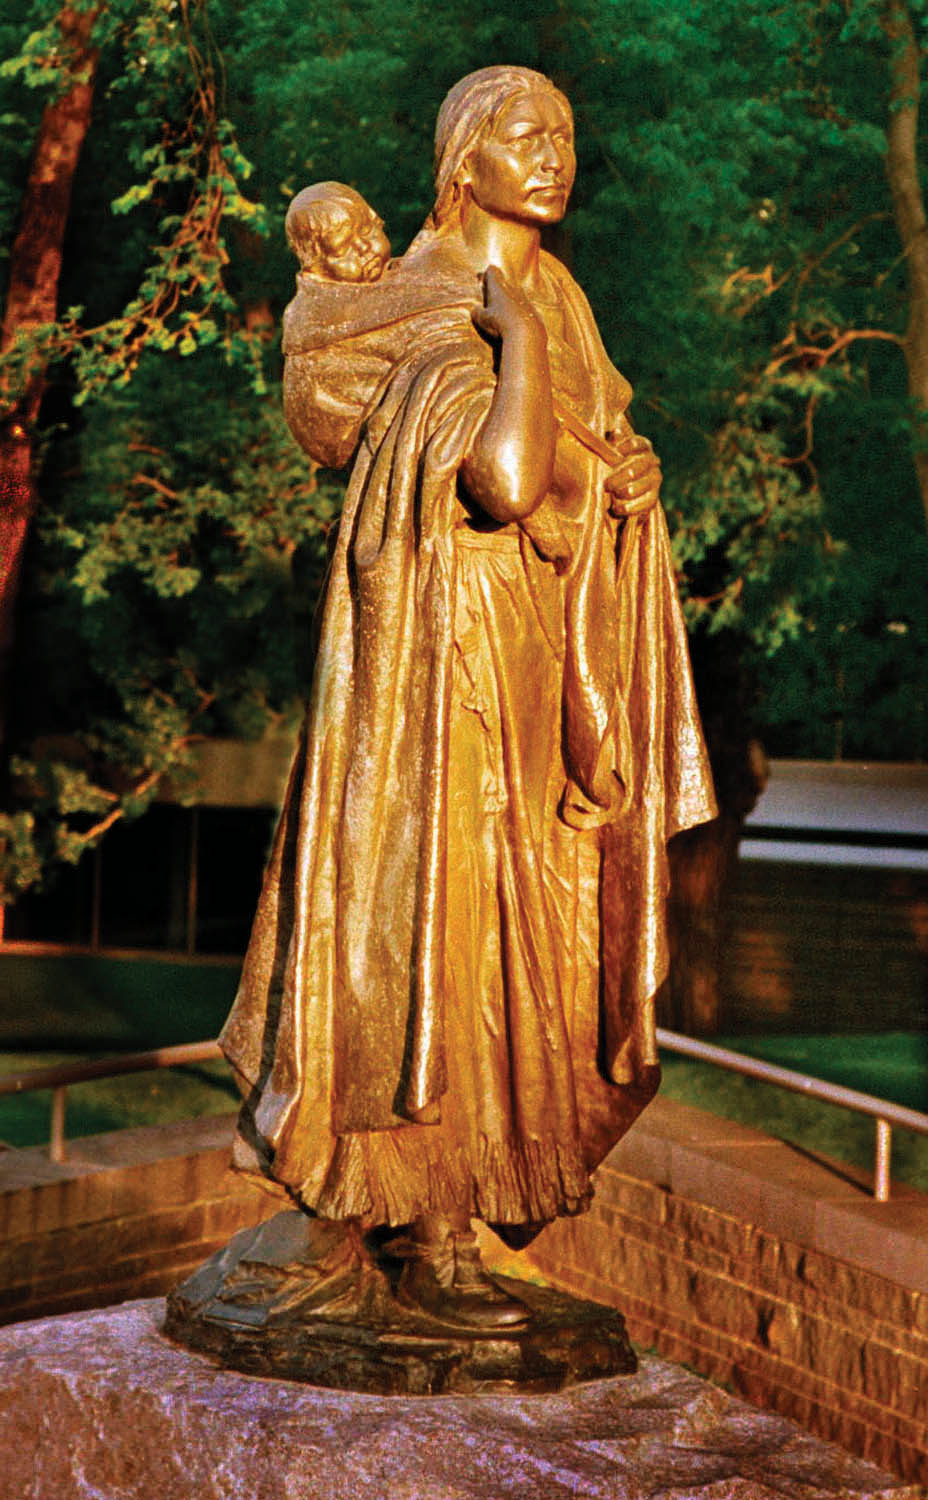 A statue of Sakakawea